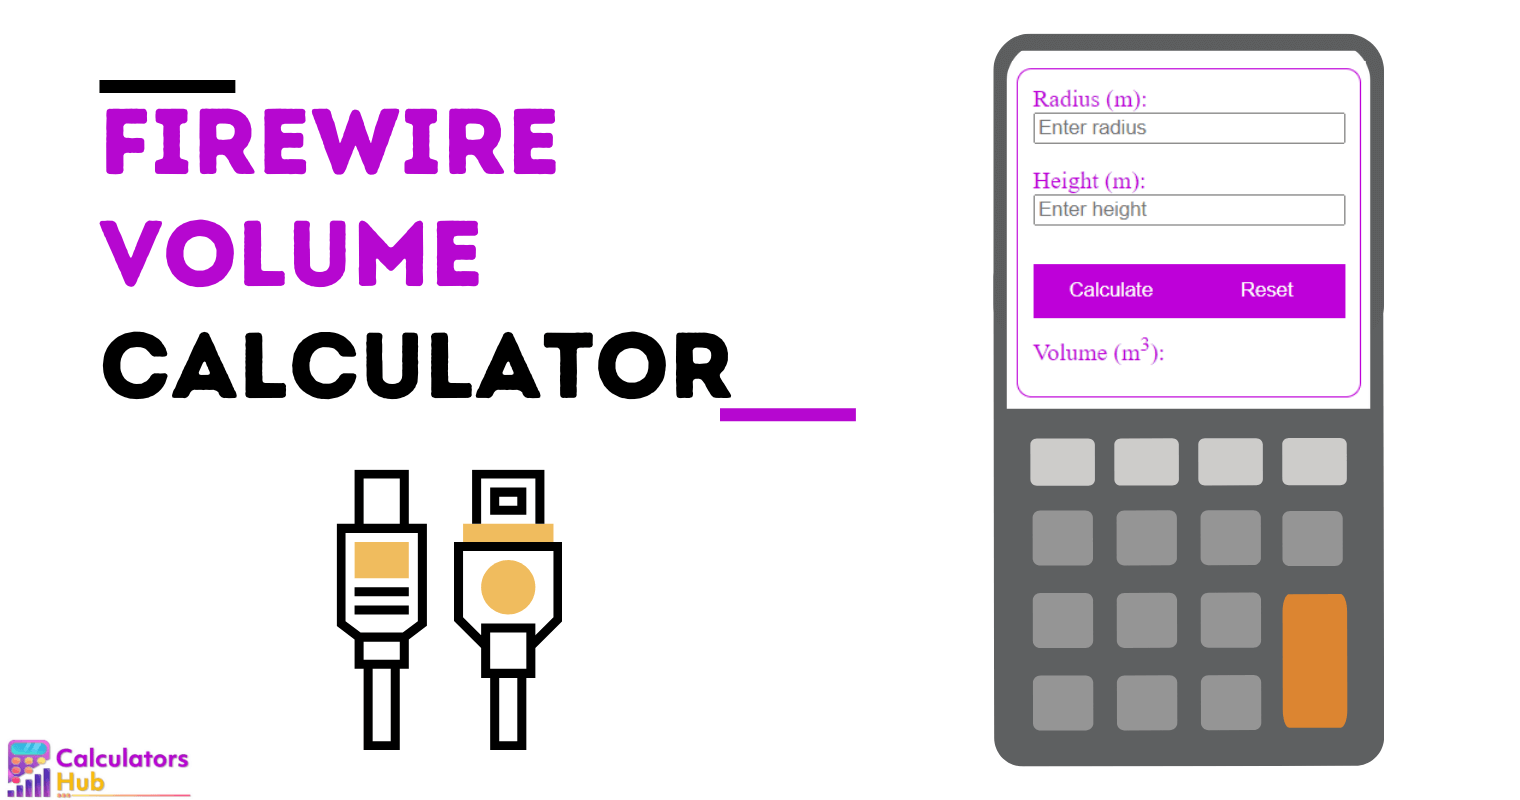 Firewire Volume Calculator